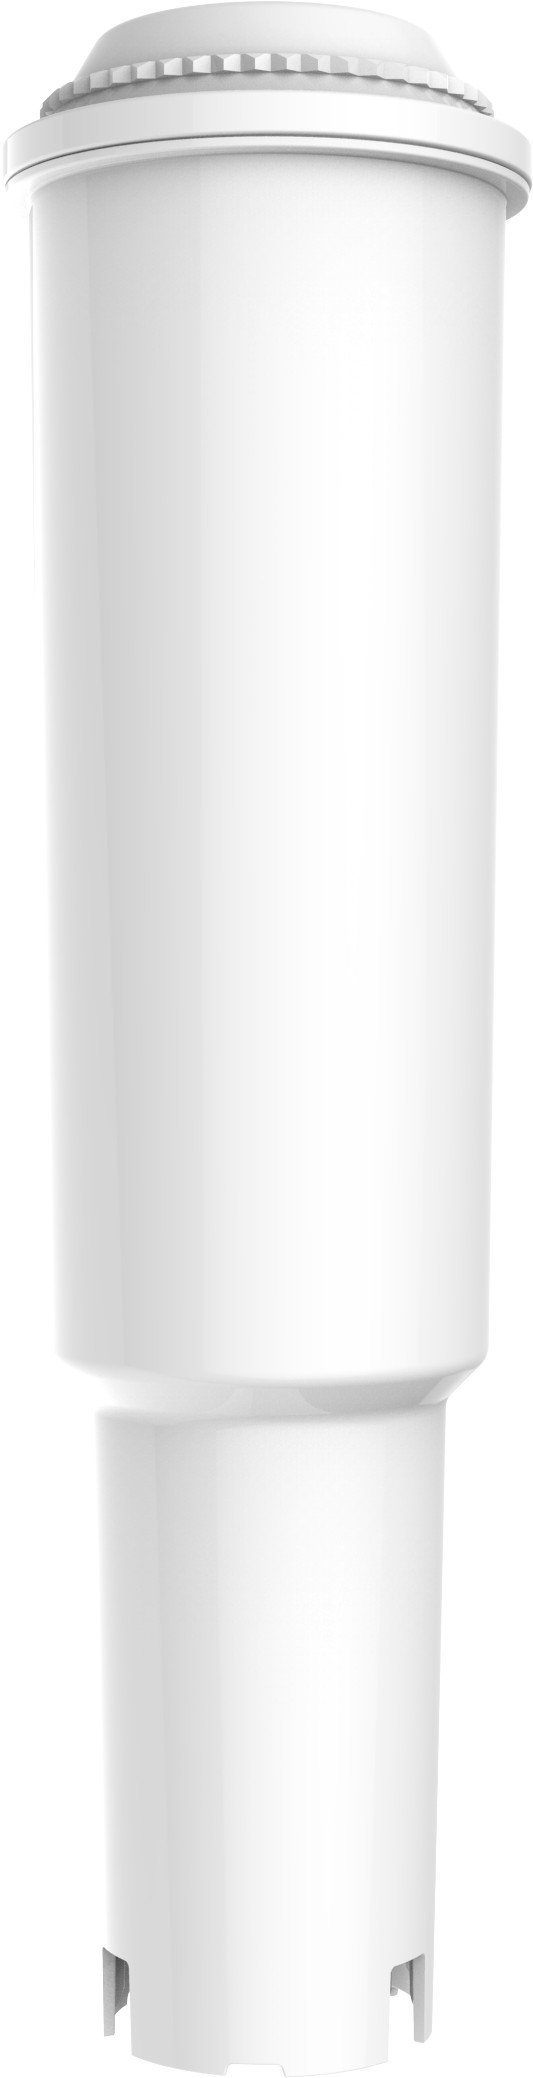 White White Jura J, Serien Comedes Wasserfilter 60209, einsetzbar Zubehör White Z einsetzbar Jura statt Claris Impressa Claris Jura Jura 8er Jura S, statt passend White, Claris Set für 62911, X, für Claris X, 68739, E,